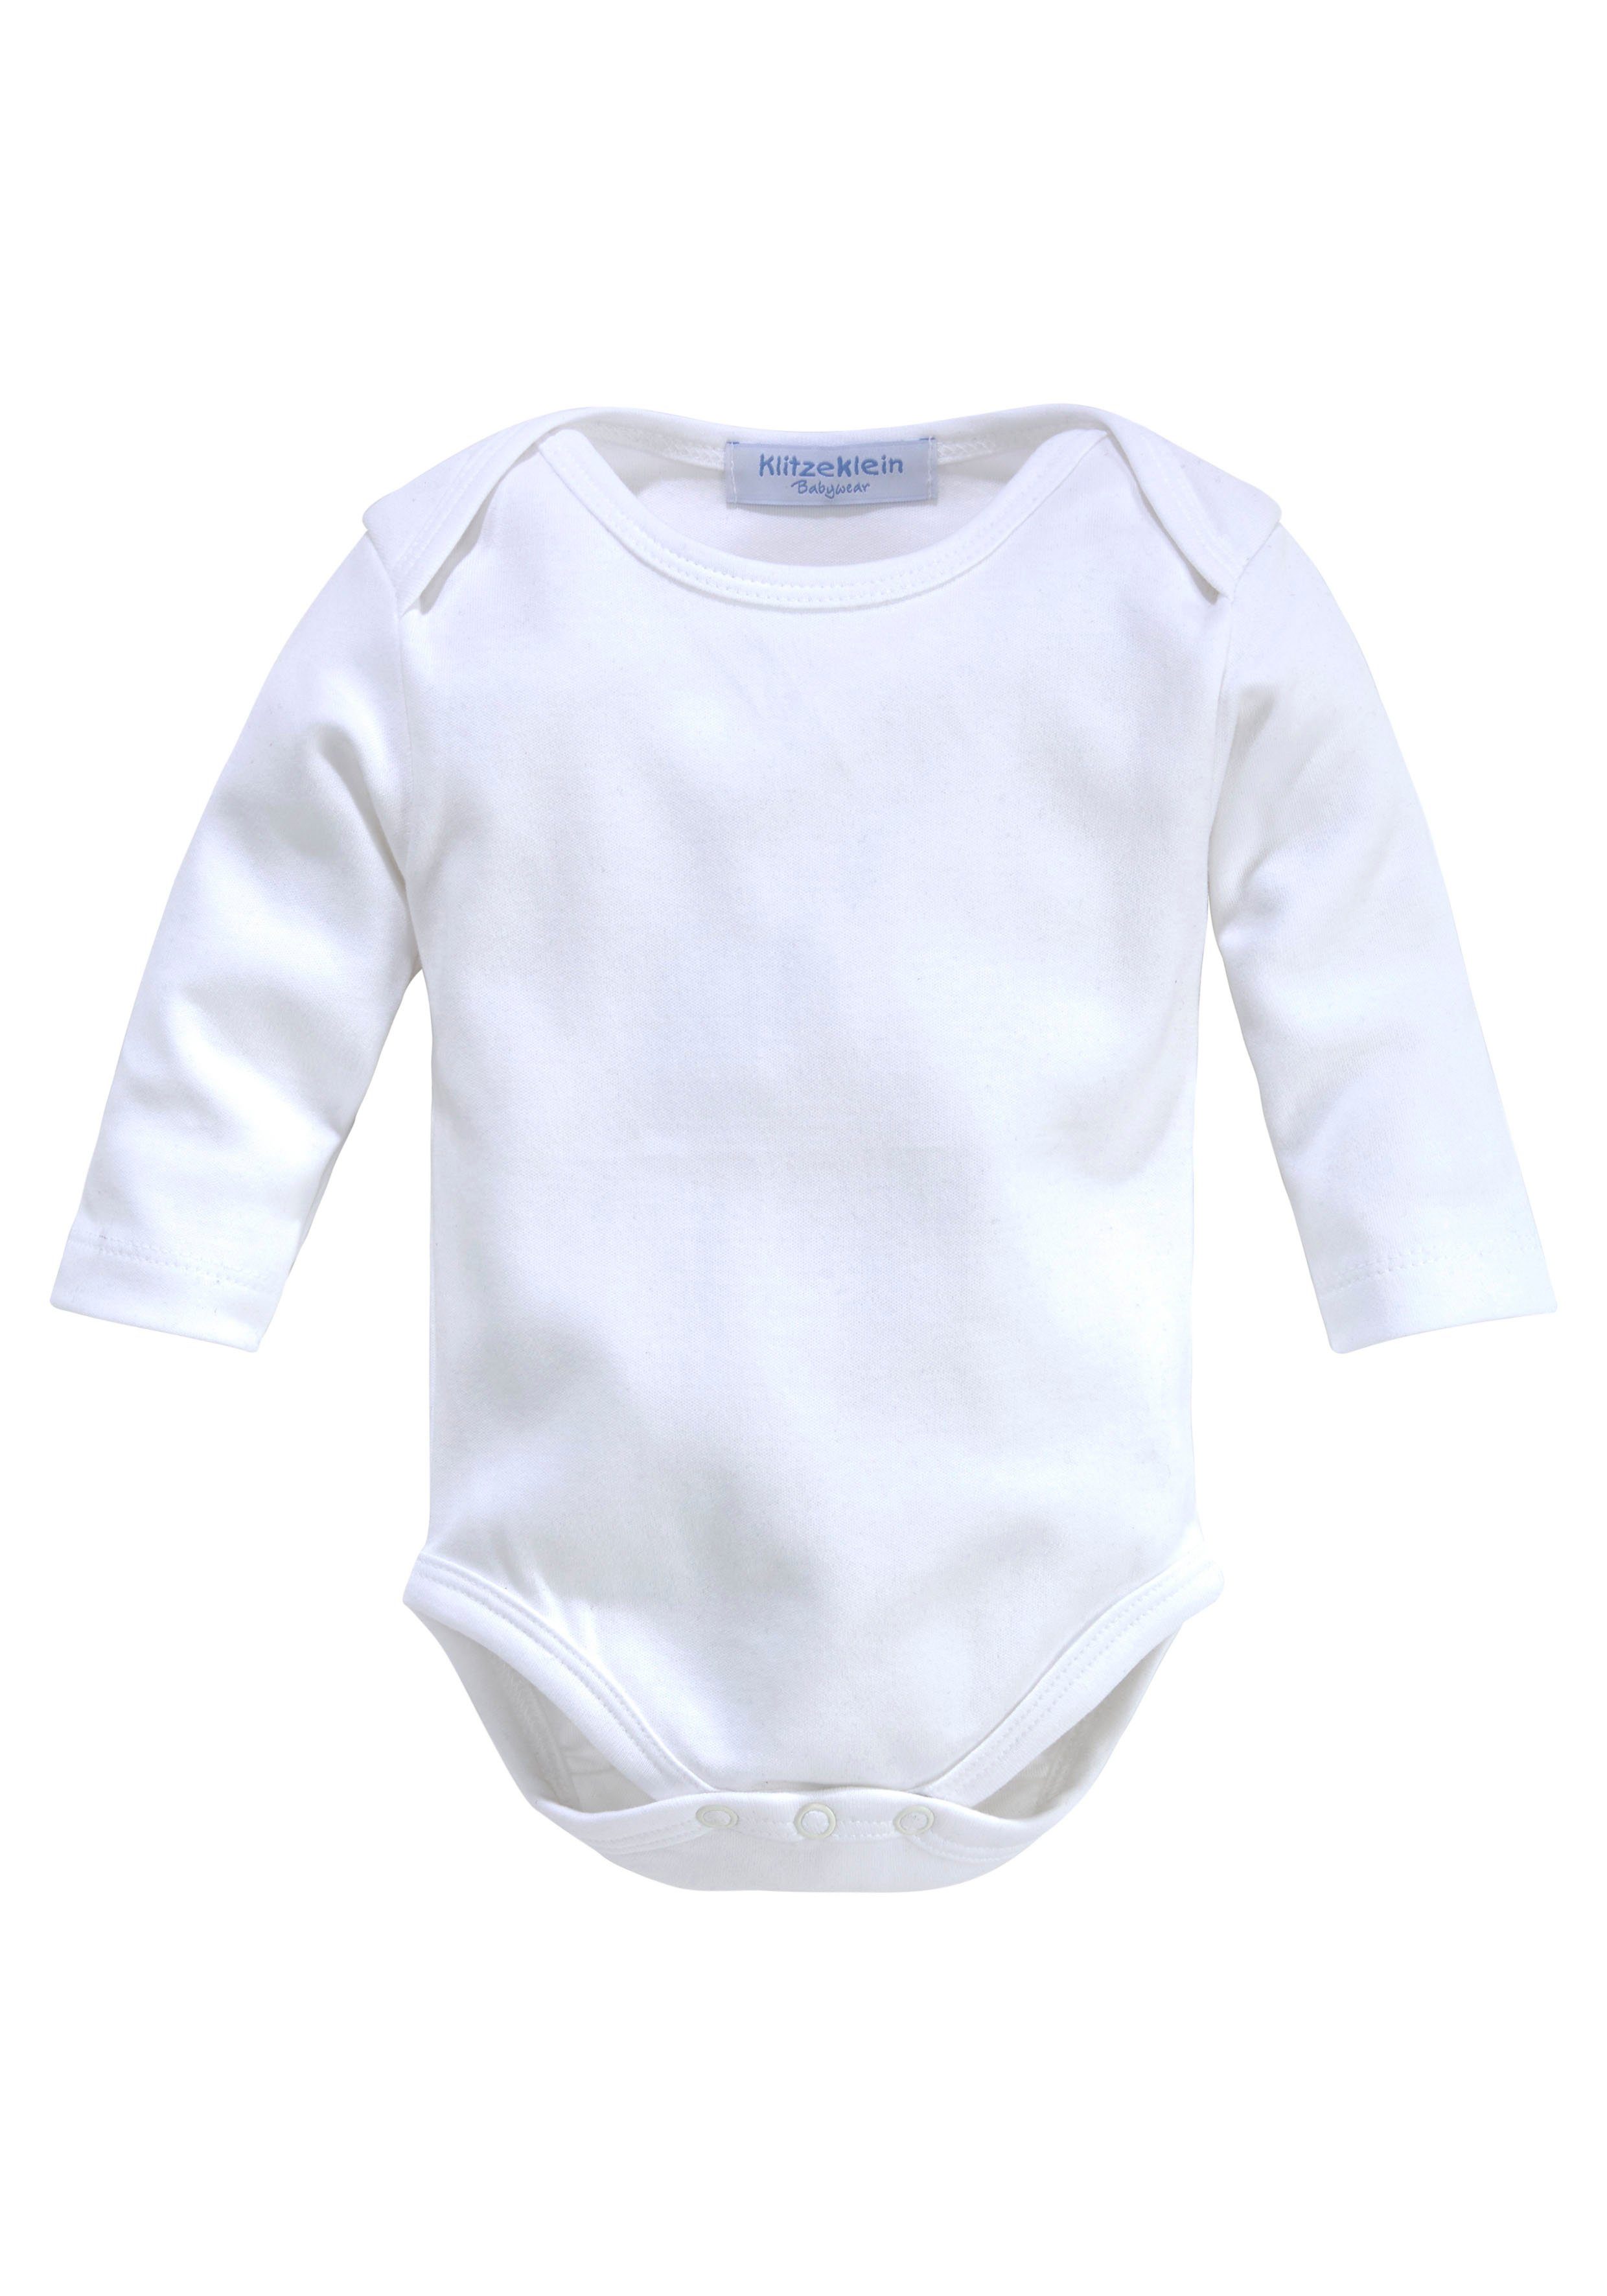 10-tlg., STERNE Baby-Set 10) Bio-Baumwolle aus Klitzeklein (Spar-Set, Neugeborenen-Geschenkset